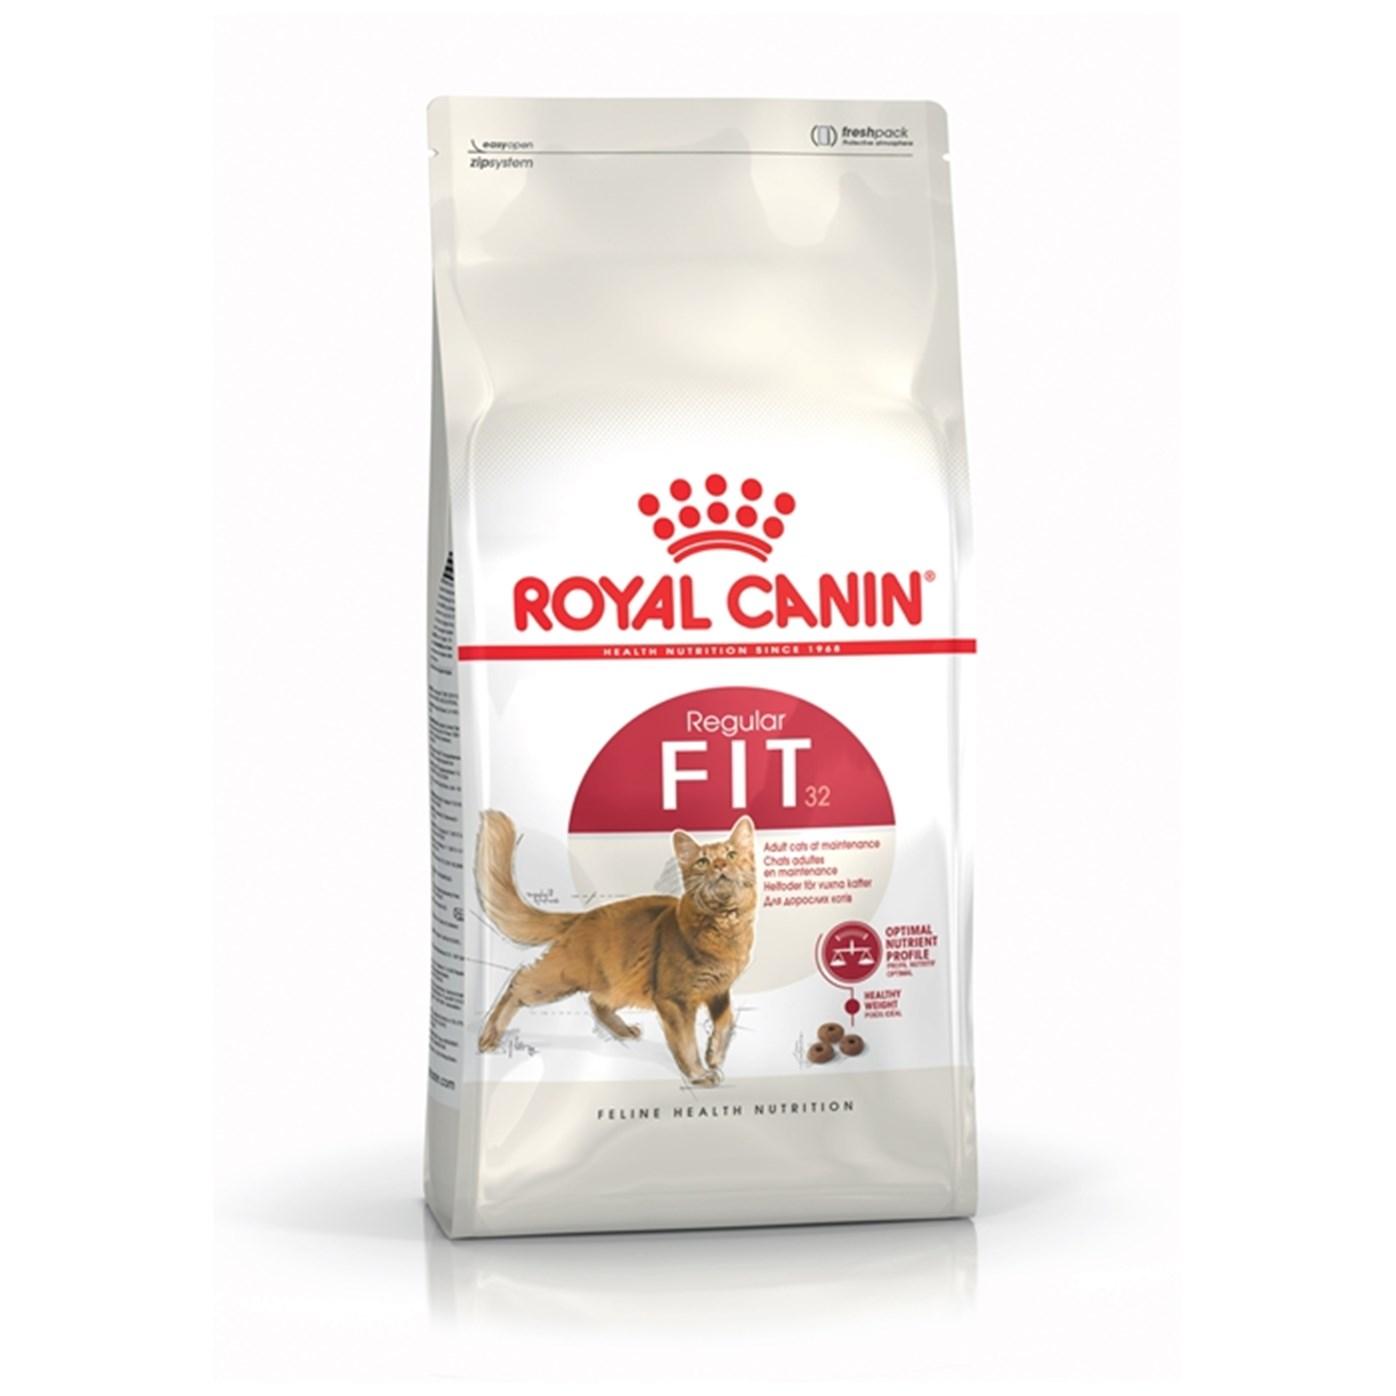 ROYAL CANIN Hrana za mačke Fit 32 15kg